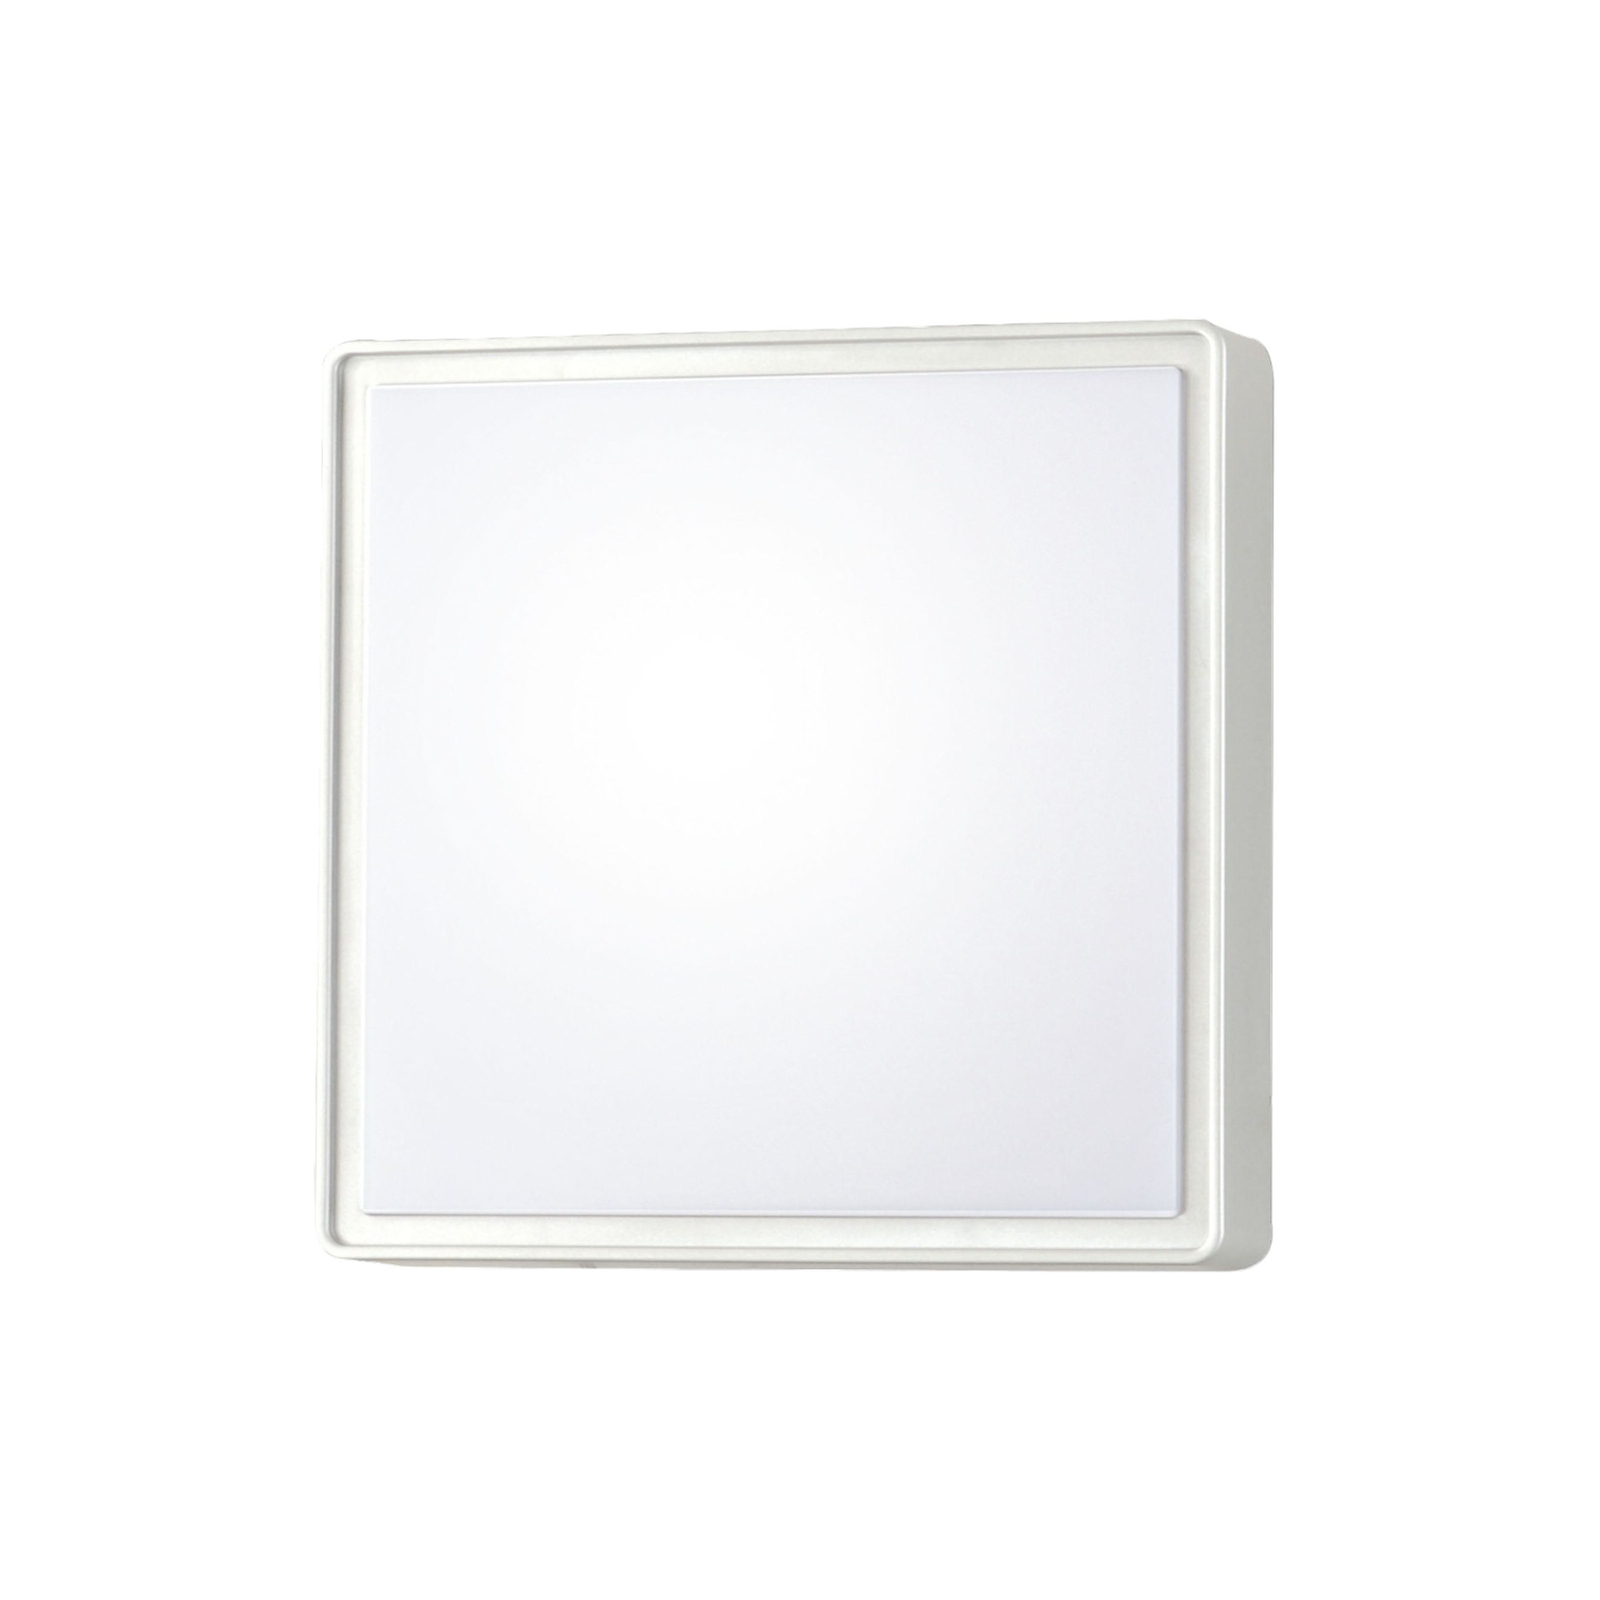 Oban LED-væglampe, 30 cm x 30 cm, hvid, IP65